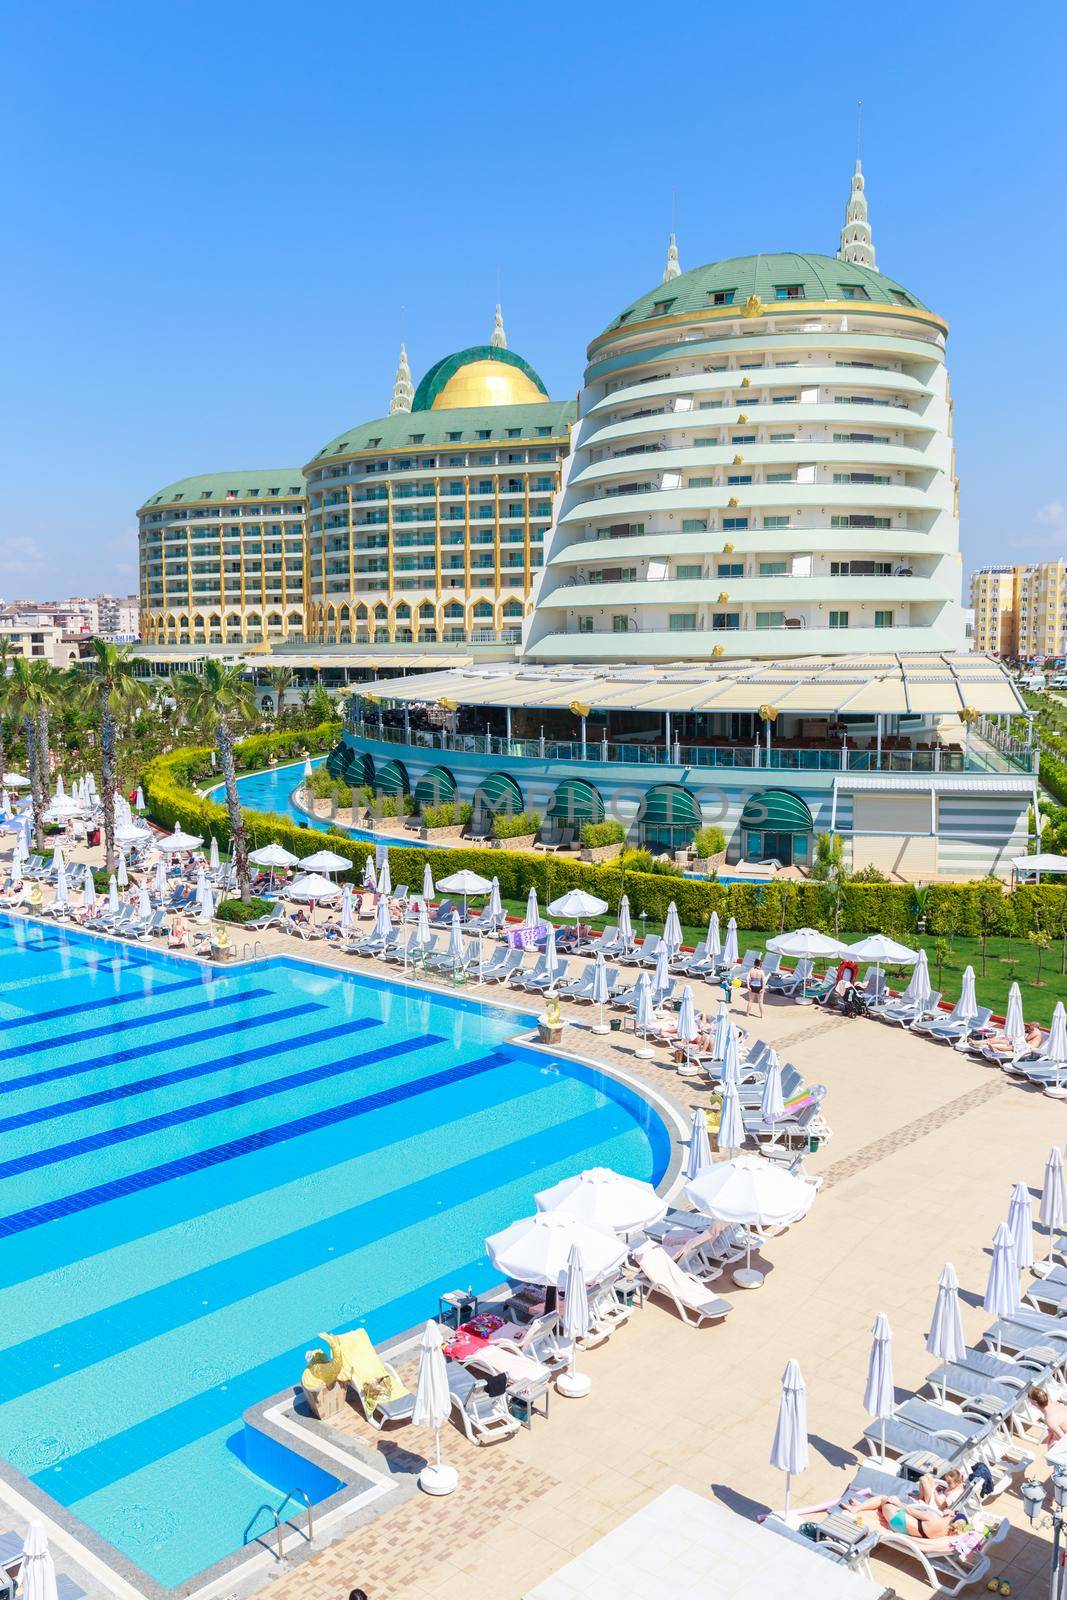 ANTALYA, TURKEY - MAY 11, 2014: Delphin Imperial hotel with swimming pool on MAY 11, 2014 in Antalya by Mariakray